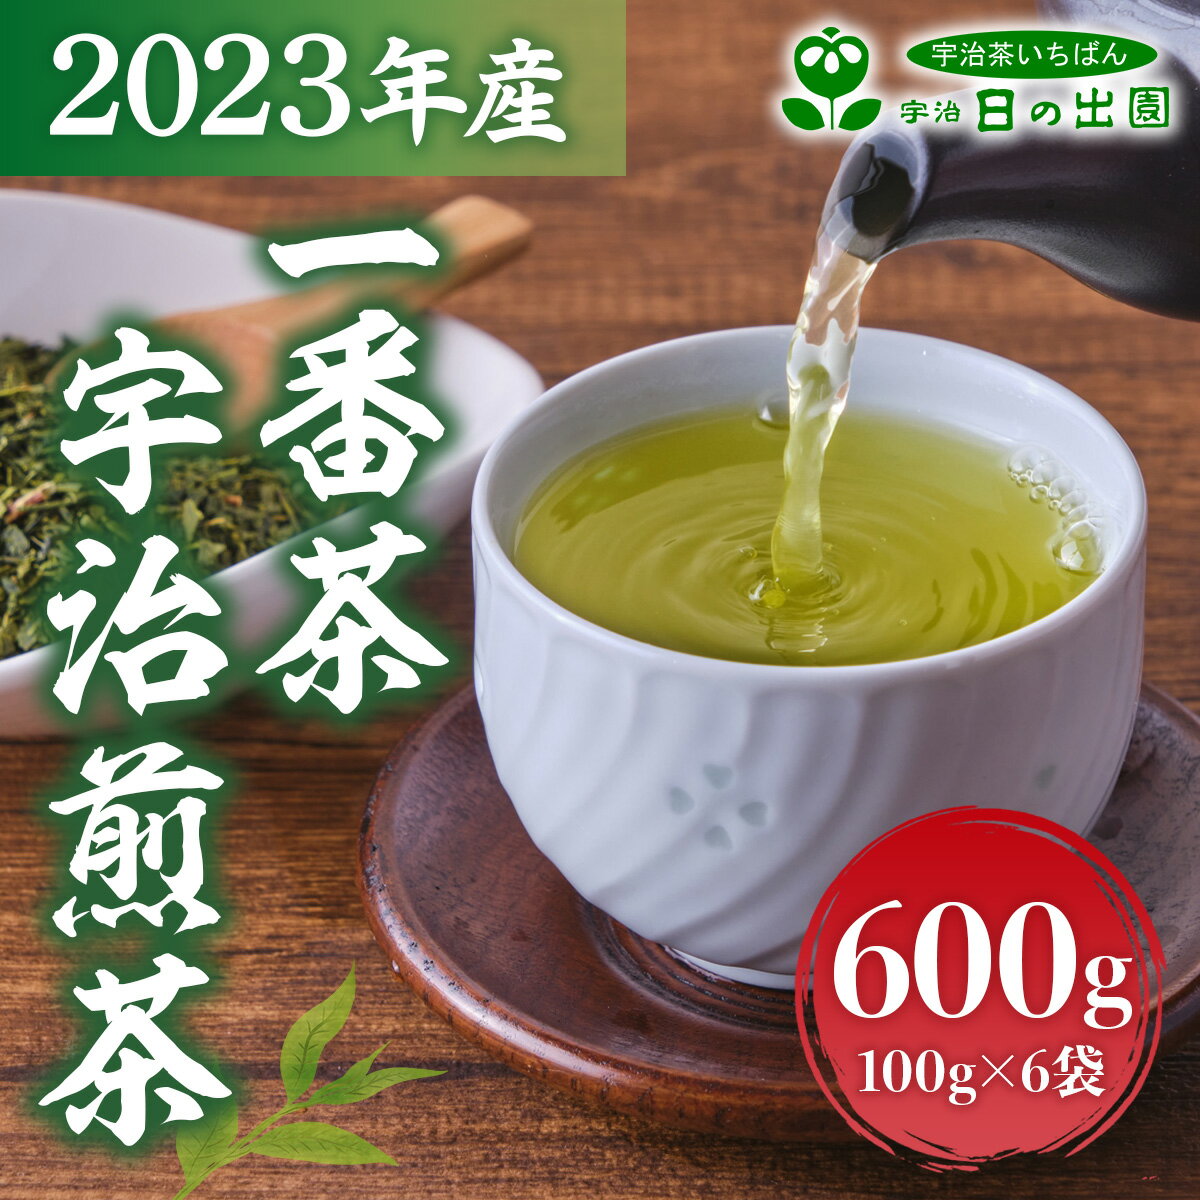 【ふるさと納税】2023年産 一番茶 宇治煎茶600g 100g×6袋 送料無料 お茶 宇治茶 煎茶 緑茶 AG05